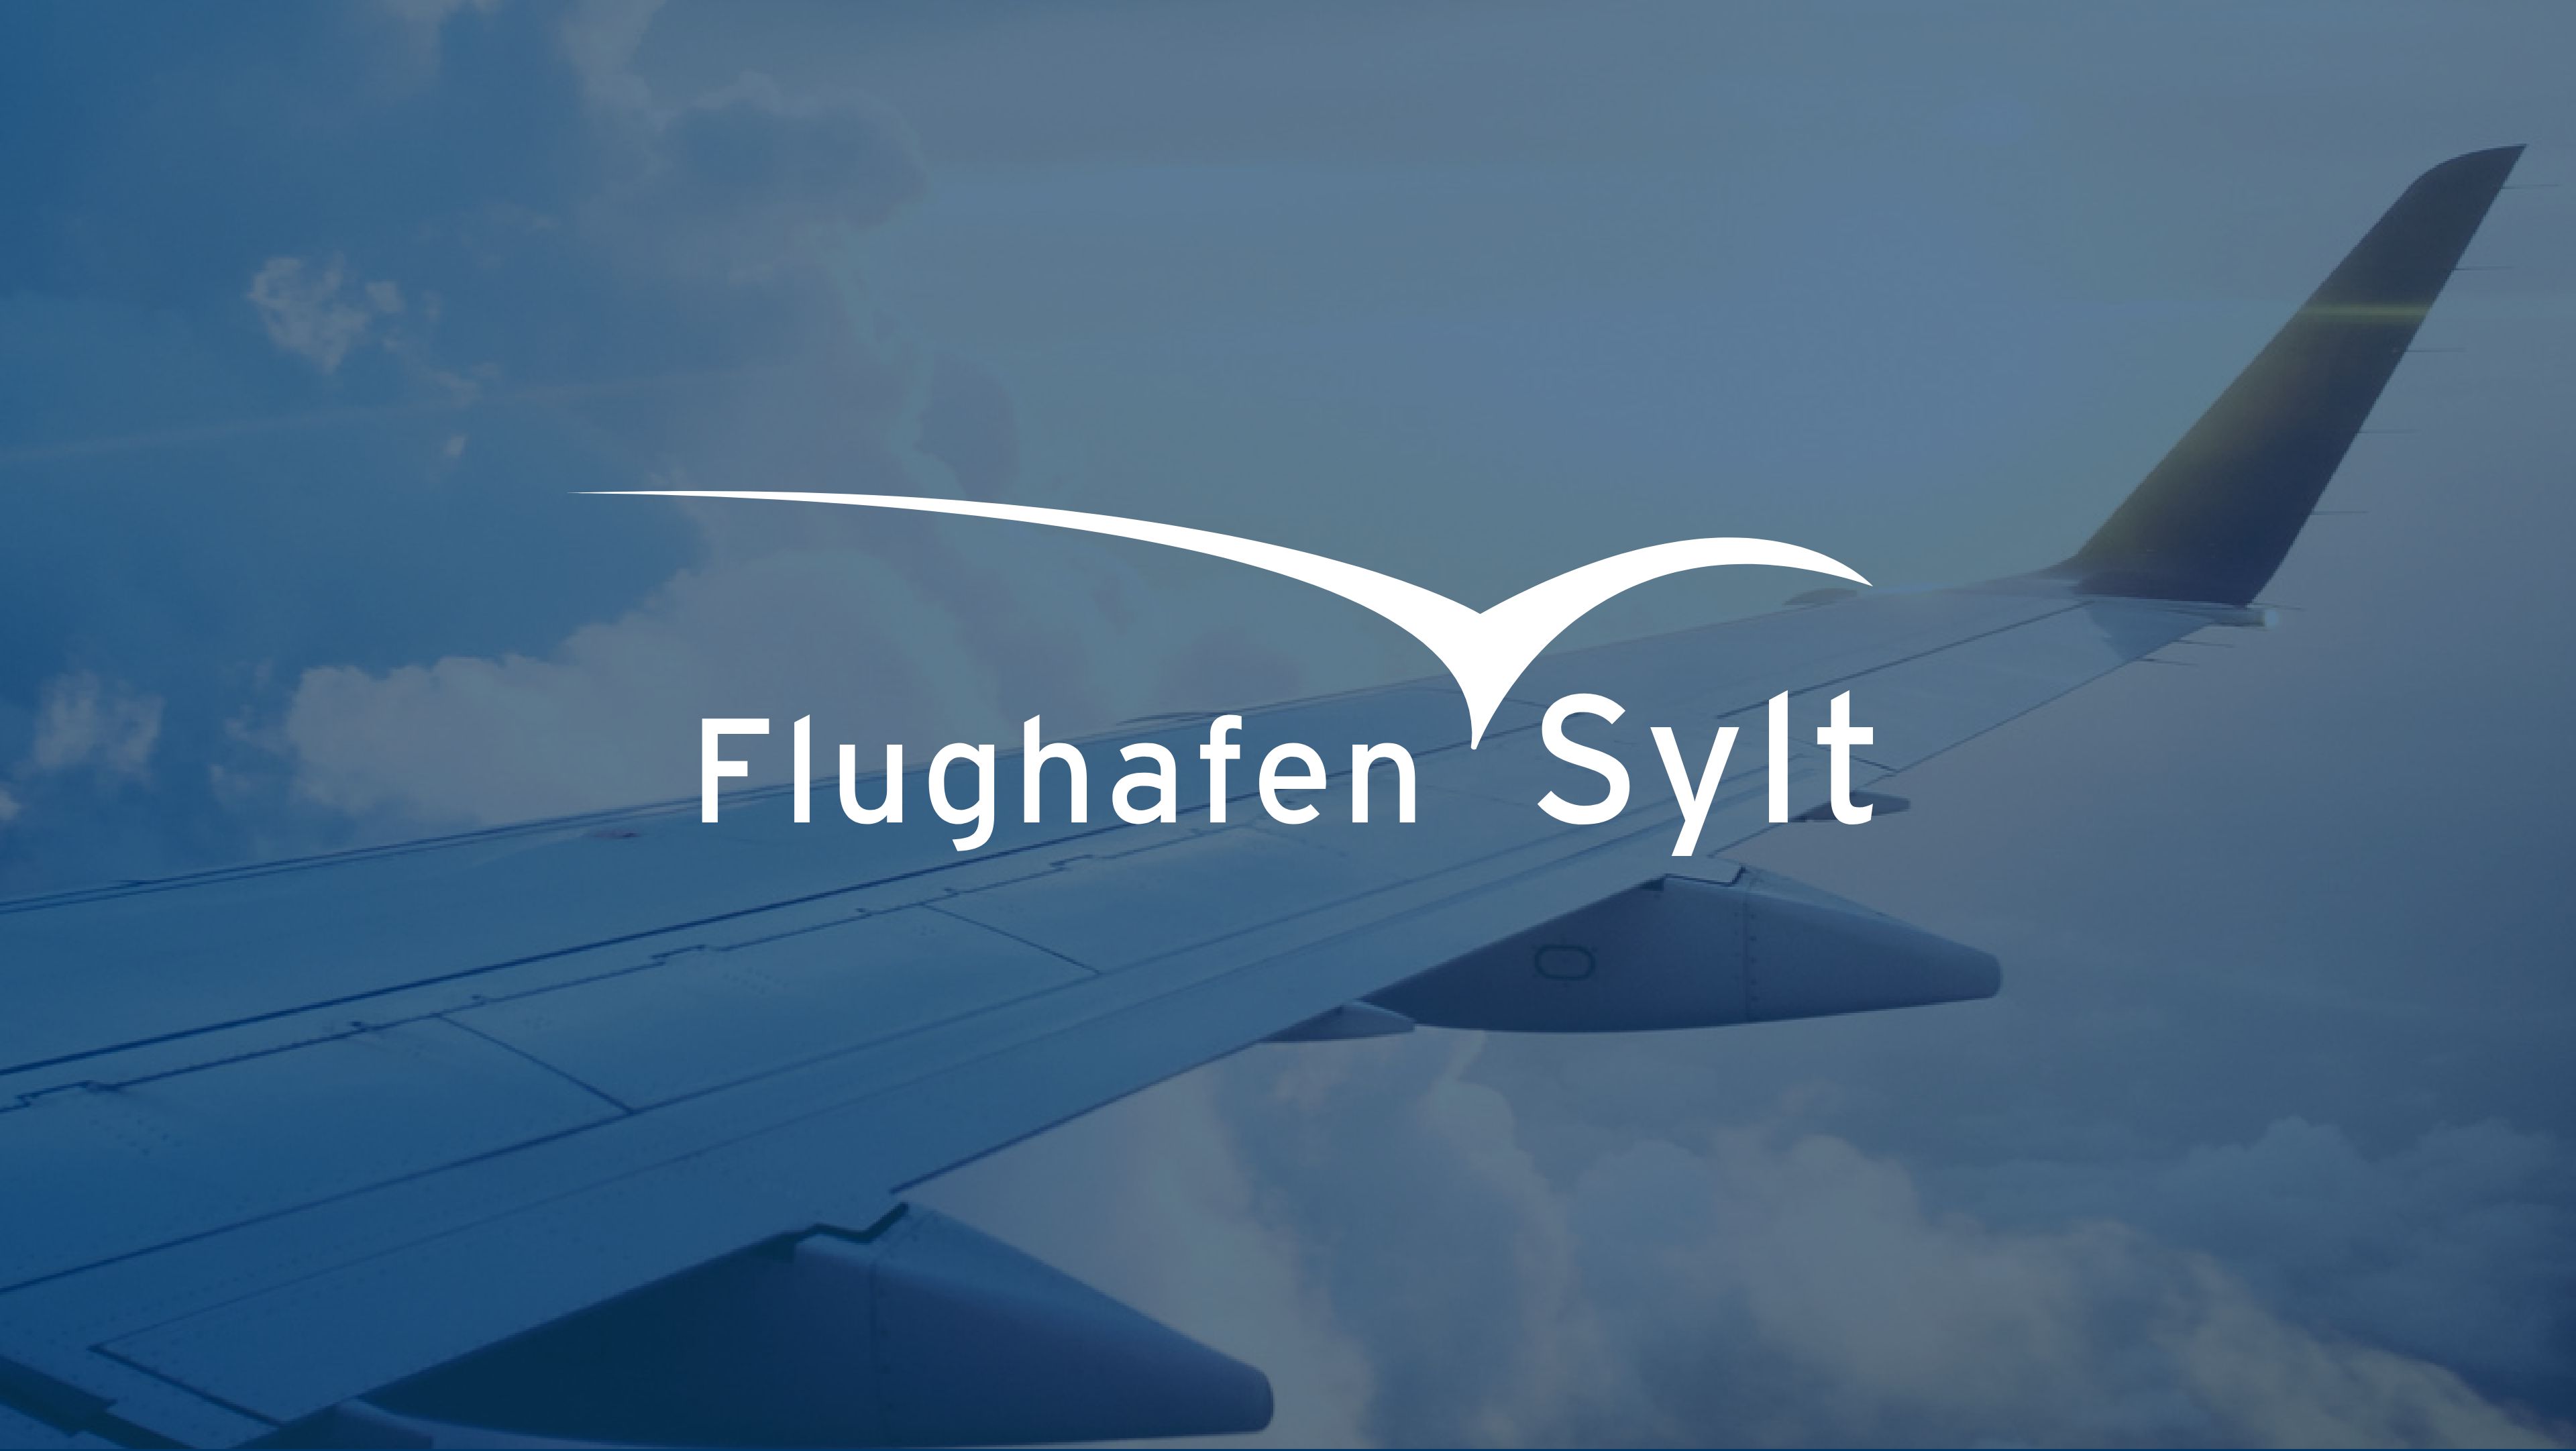 Das Logo von Flughafen Sylt als overlay